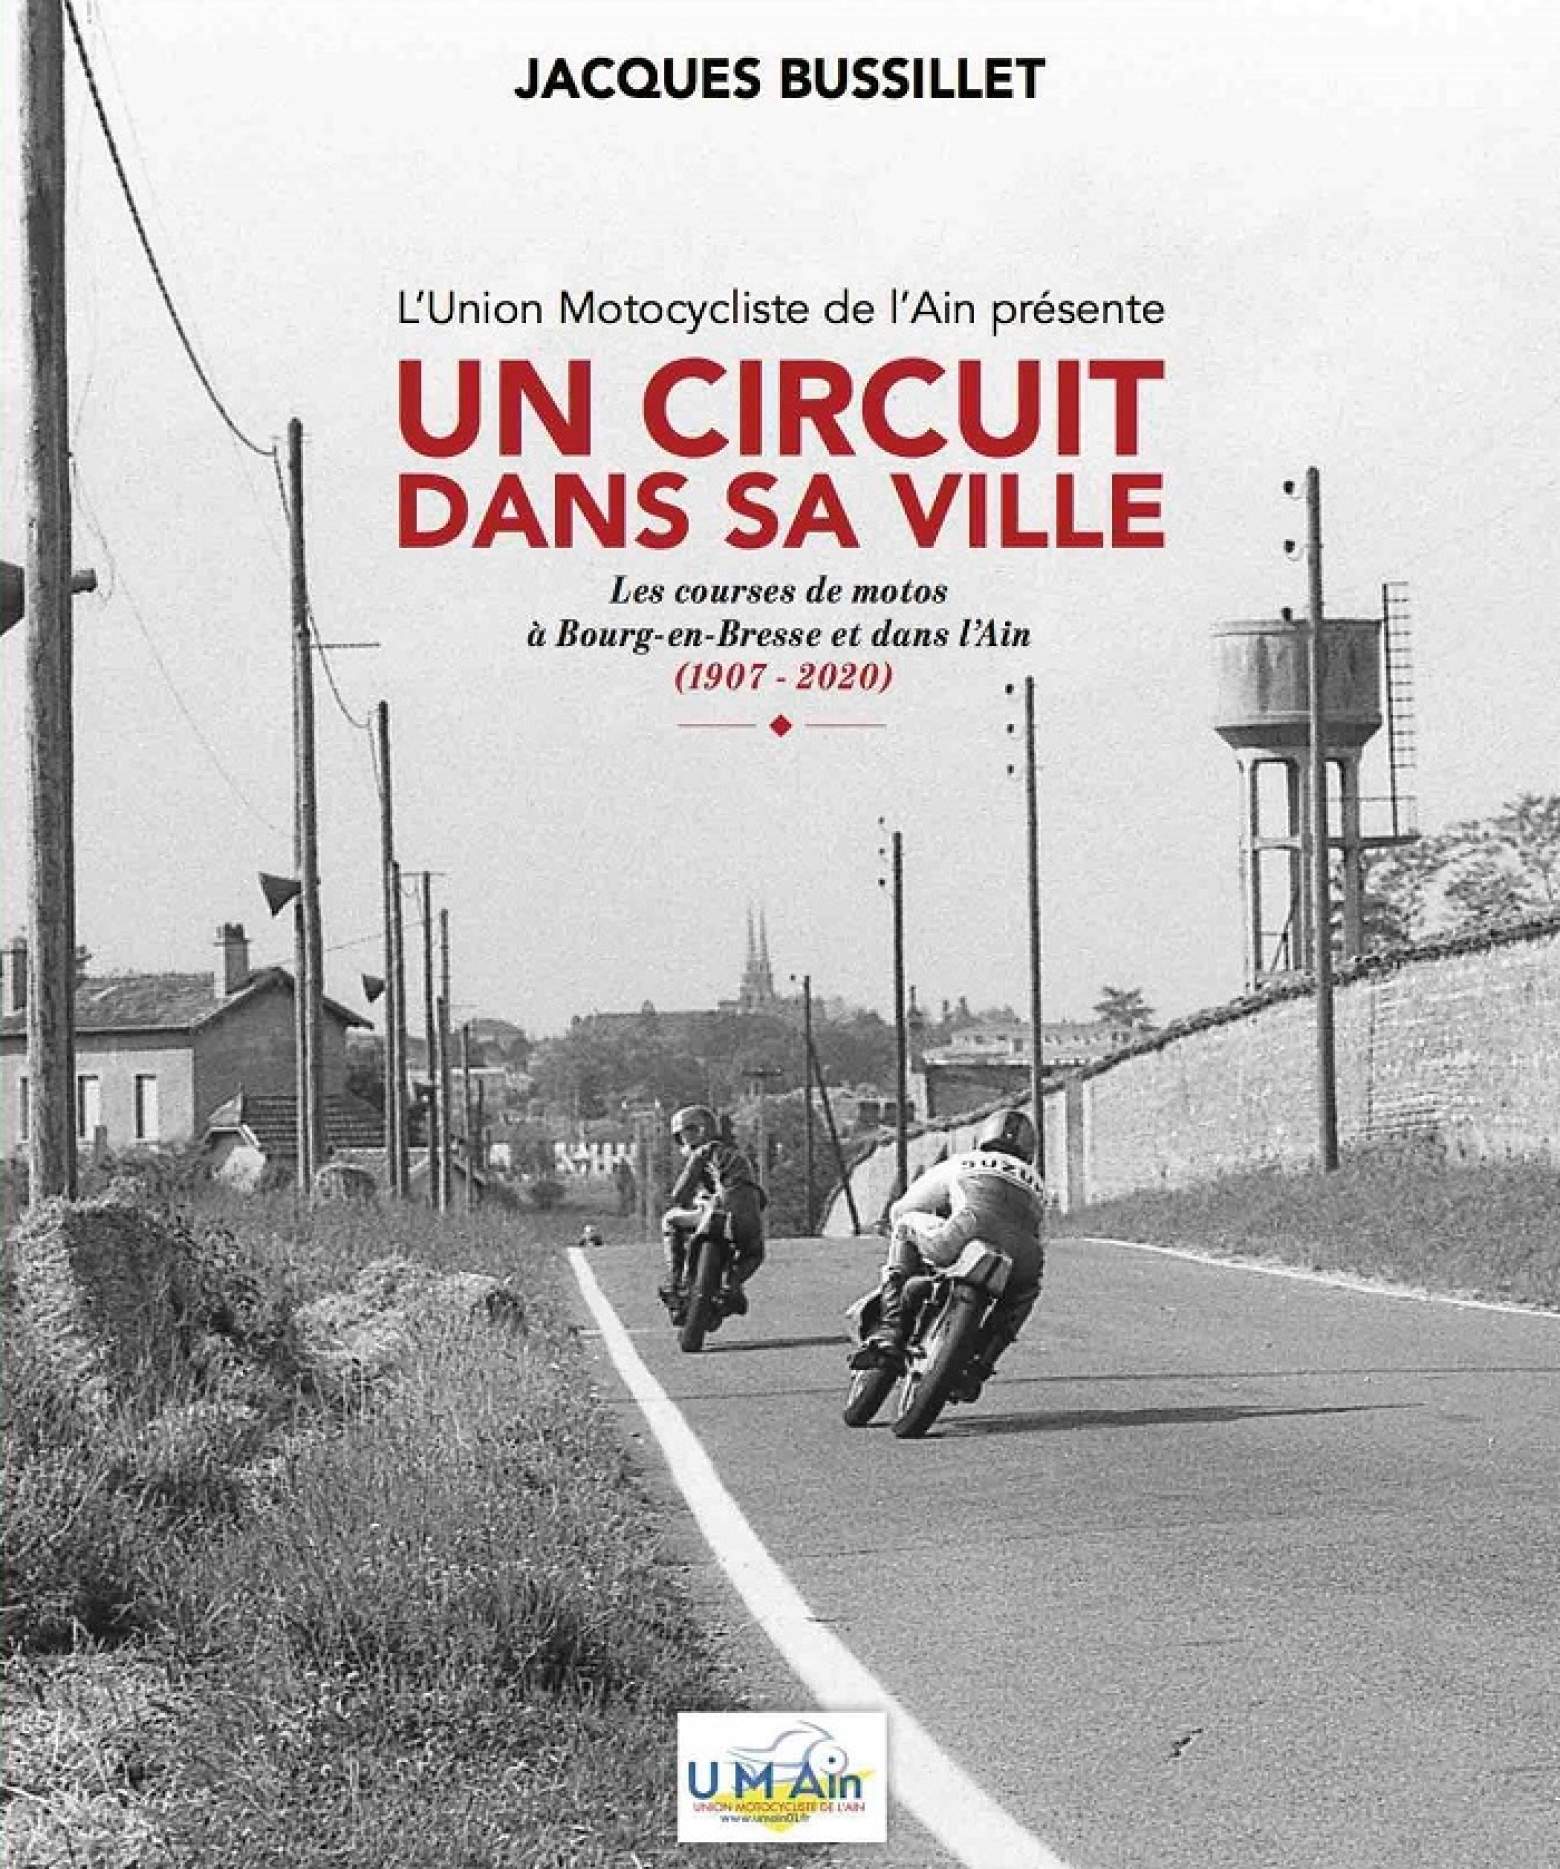 Idée de cadeau de noël pour cette fin d’année 2023 : un livre sur les courses de motos à Bourg-en-Bresse : un circuit dans sa ville